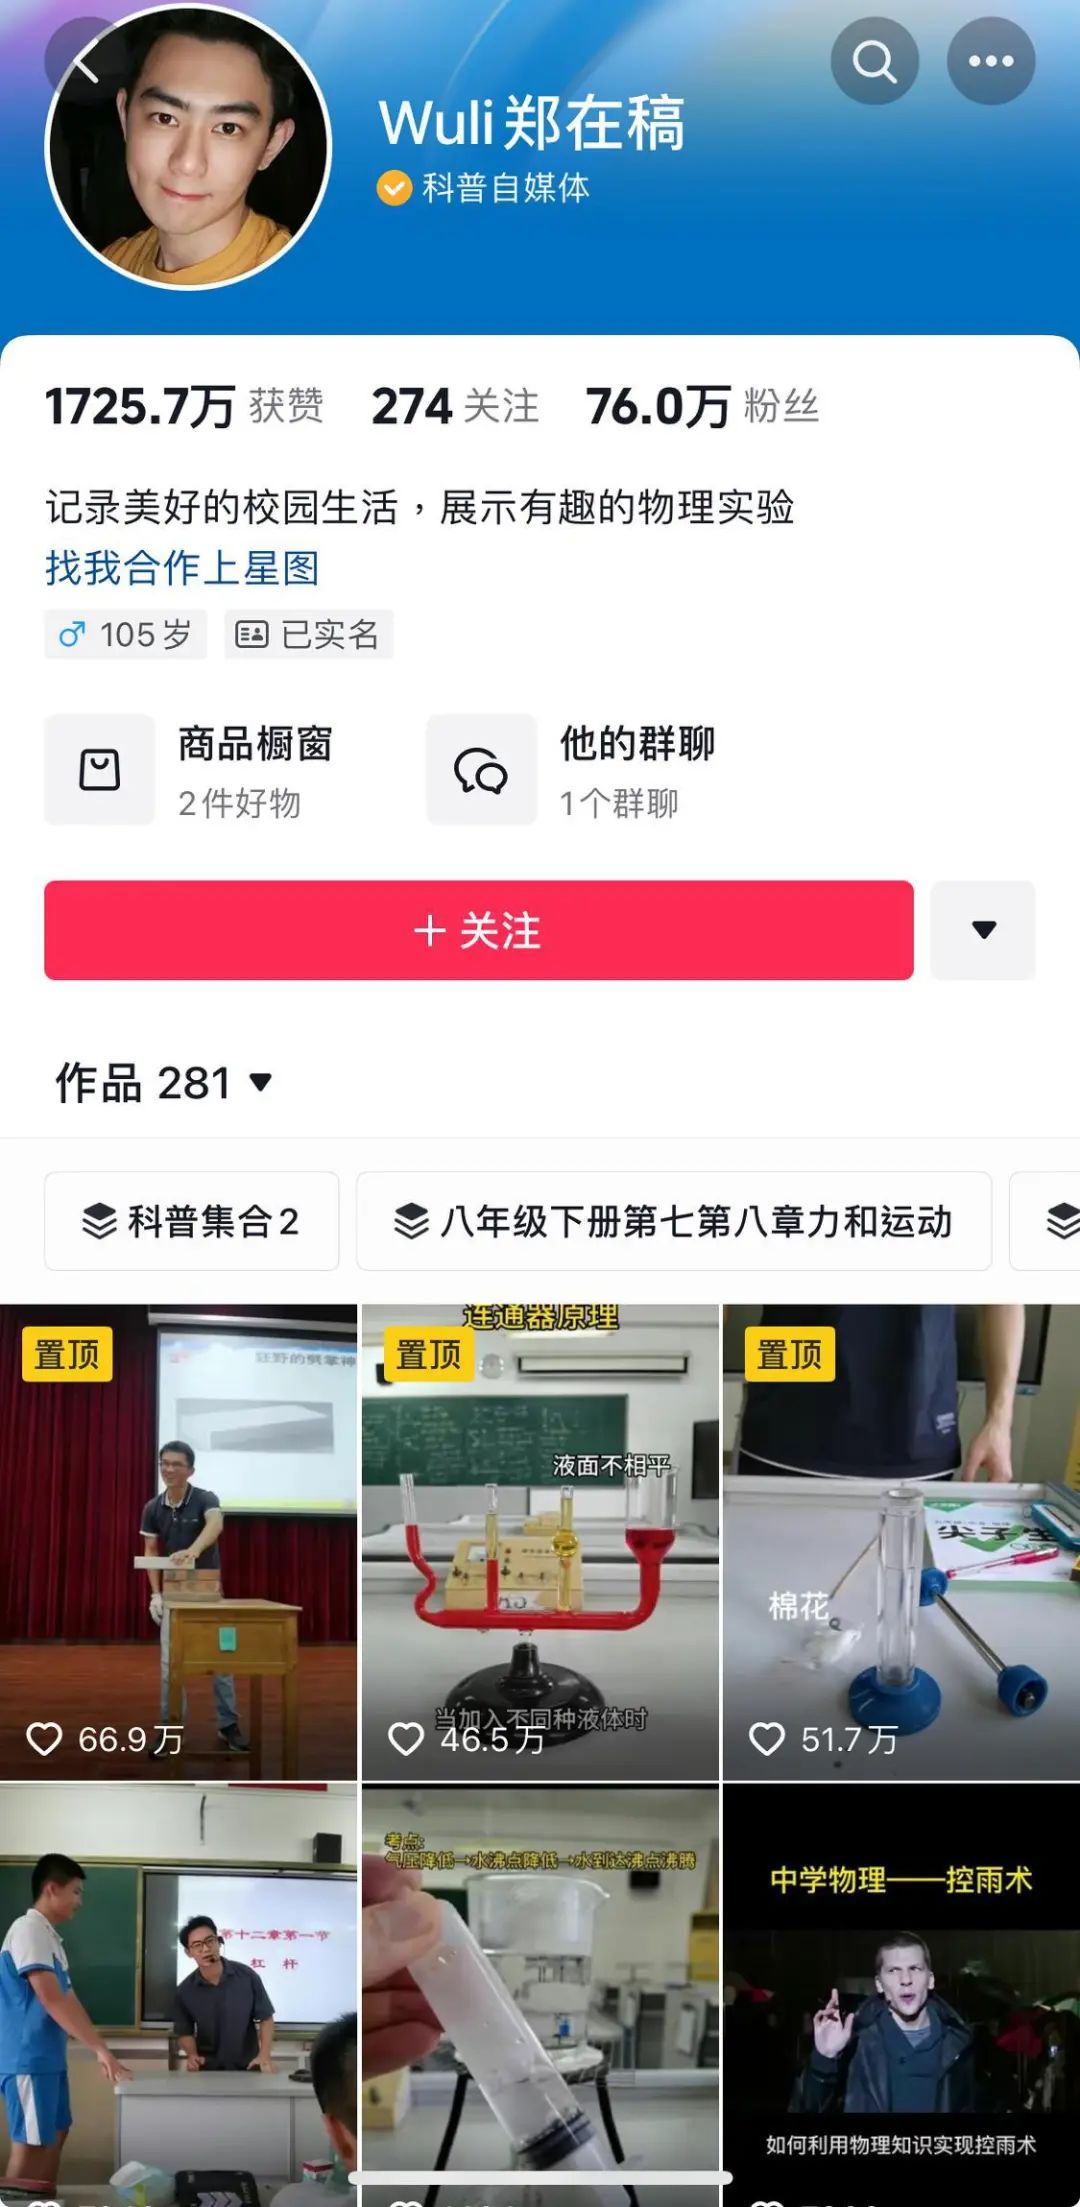 黄子羿运营的科普抖音账号“Wuli郑在稿”吸引粉丝76万。